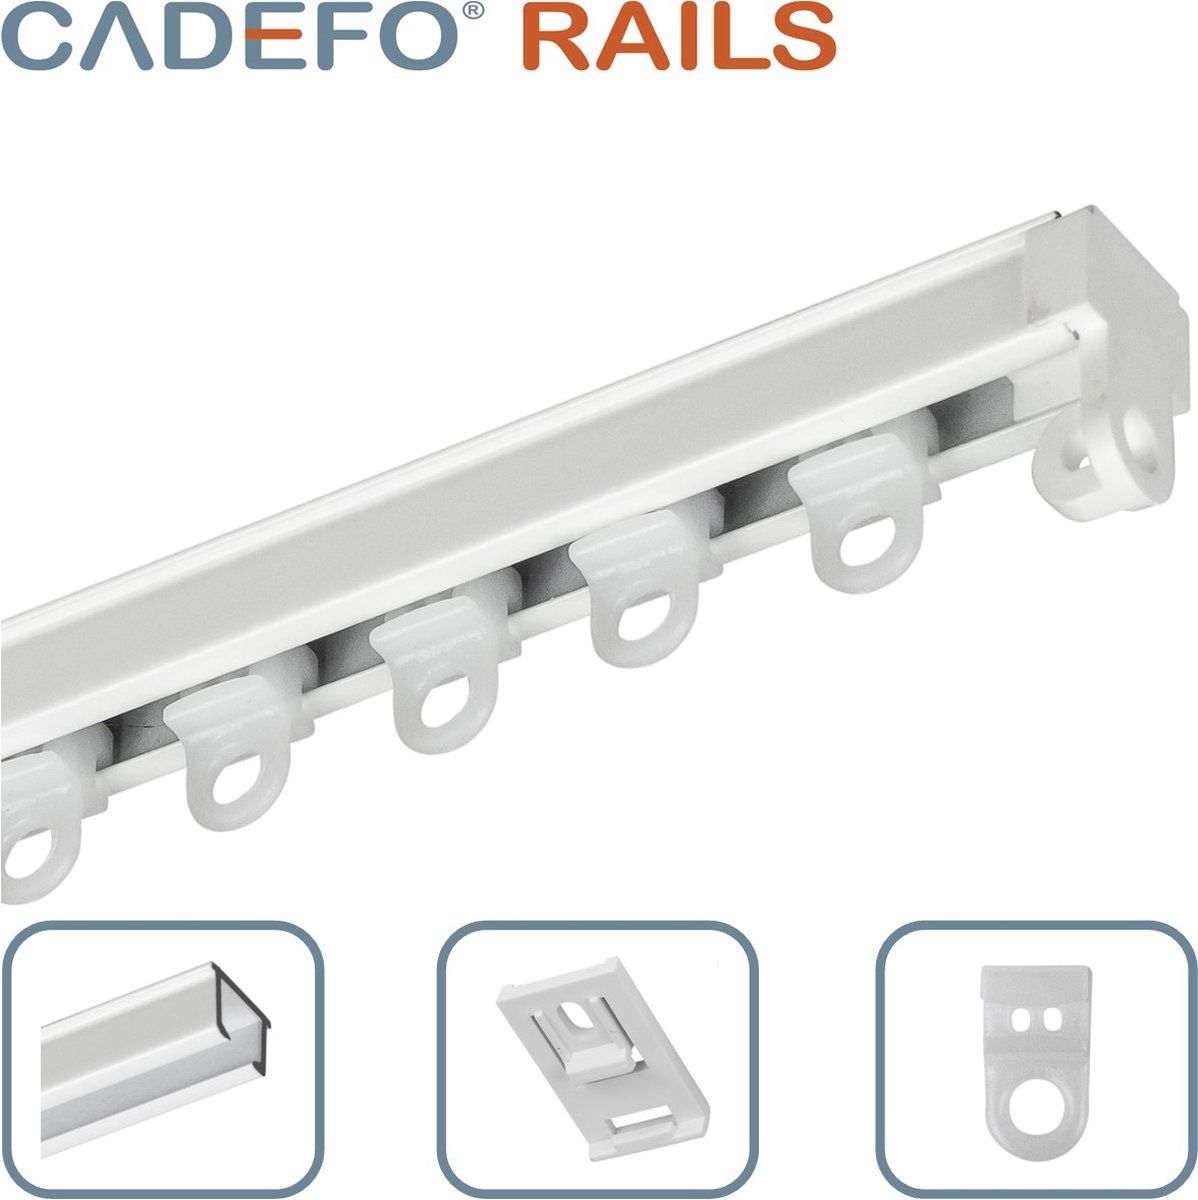 CADEFO RAILS (451 - 500 cm) Gordijnrails - Compleet op maat! - UIT 1 STUK - Leverbaar tot 6 meter - Plafondbevestiging - Lengte 470 cm